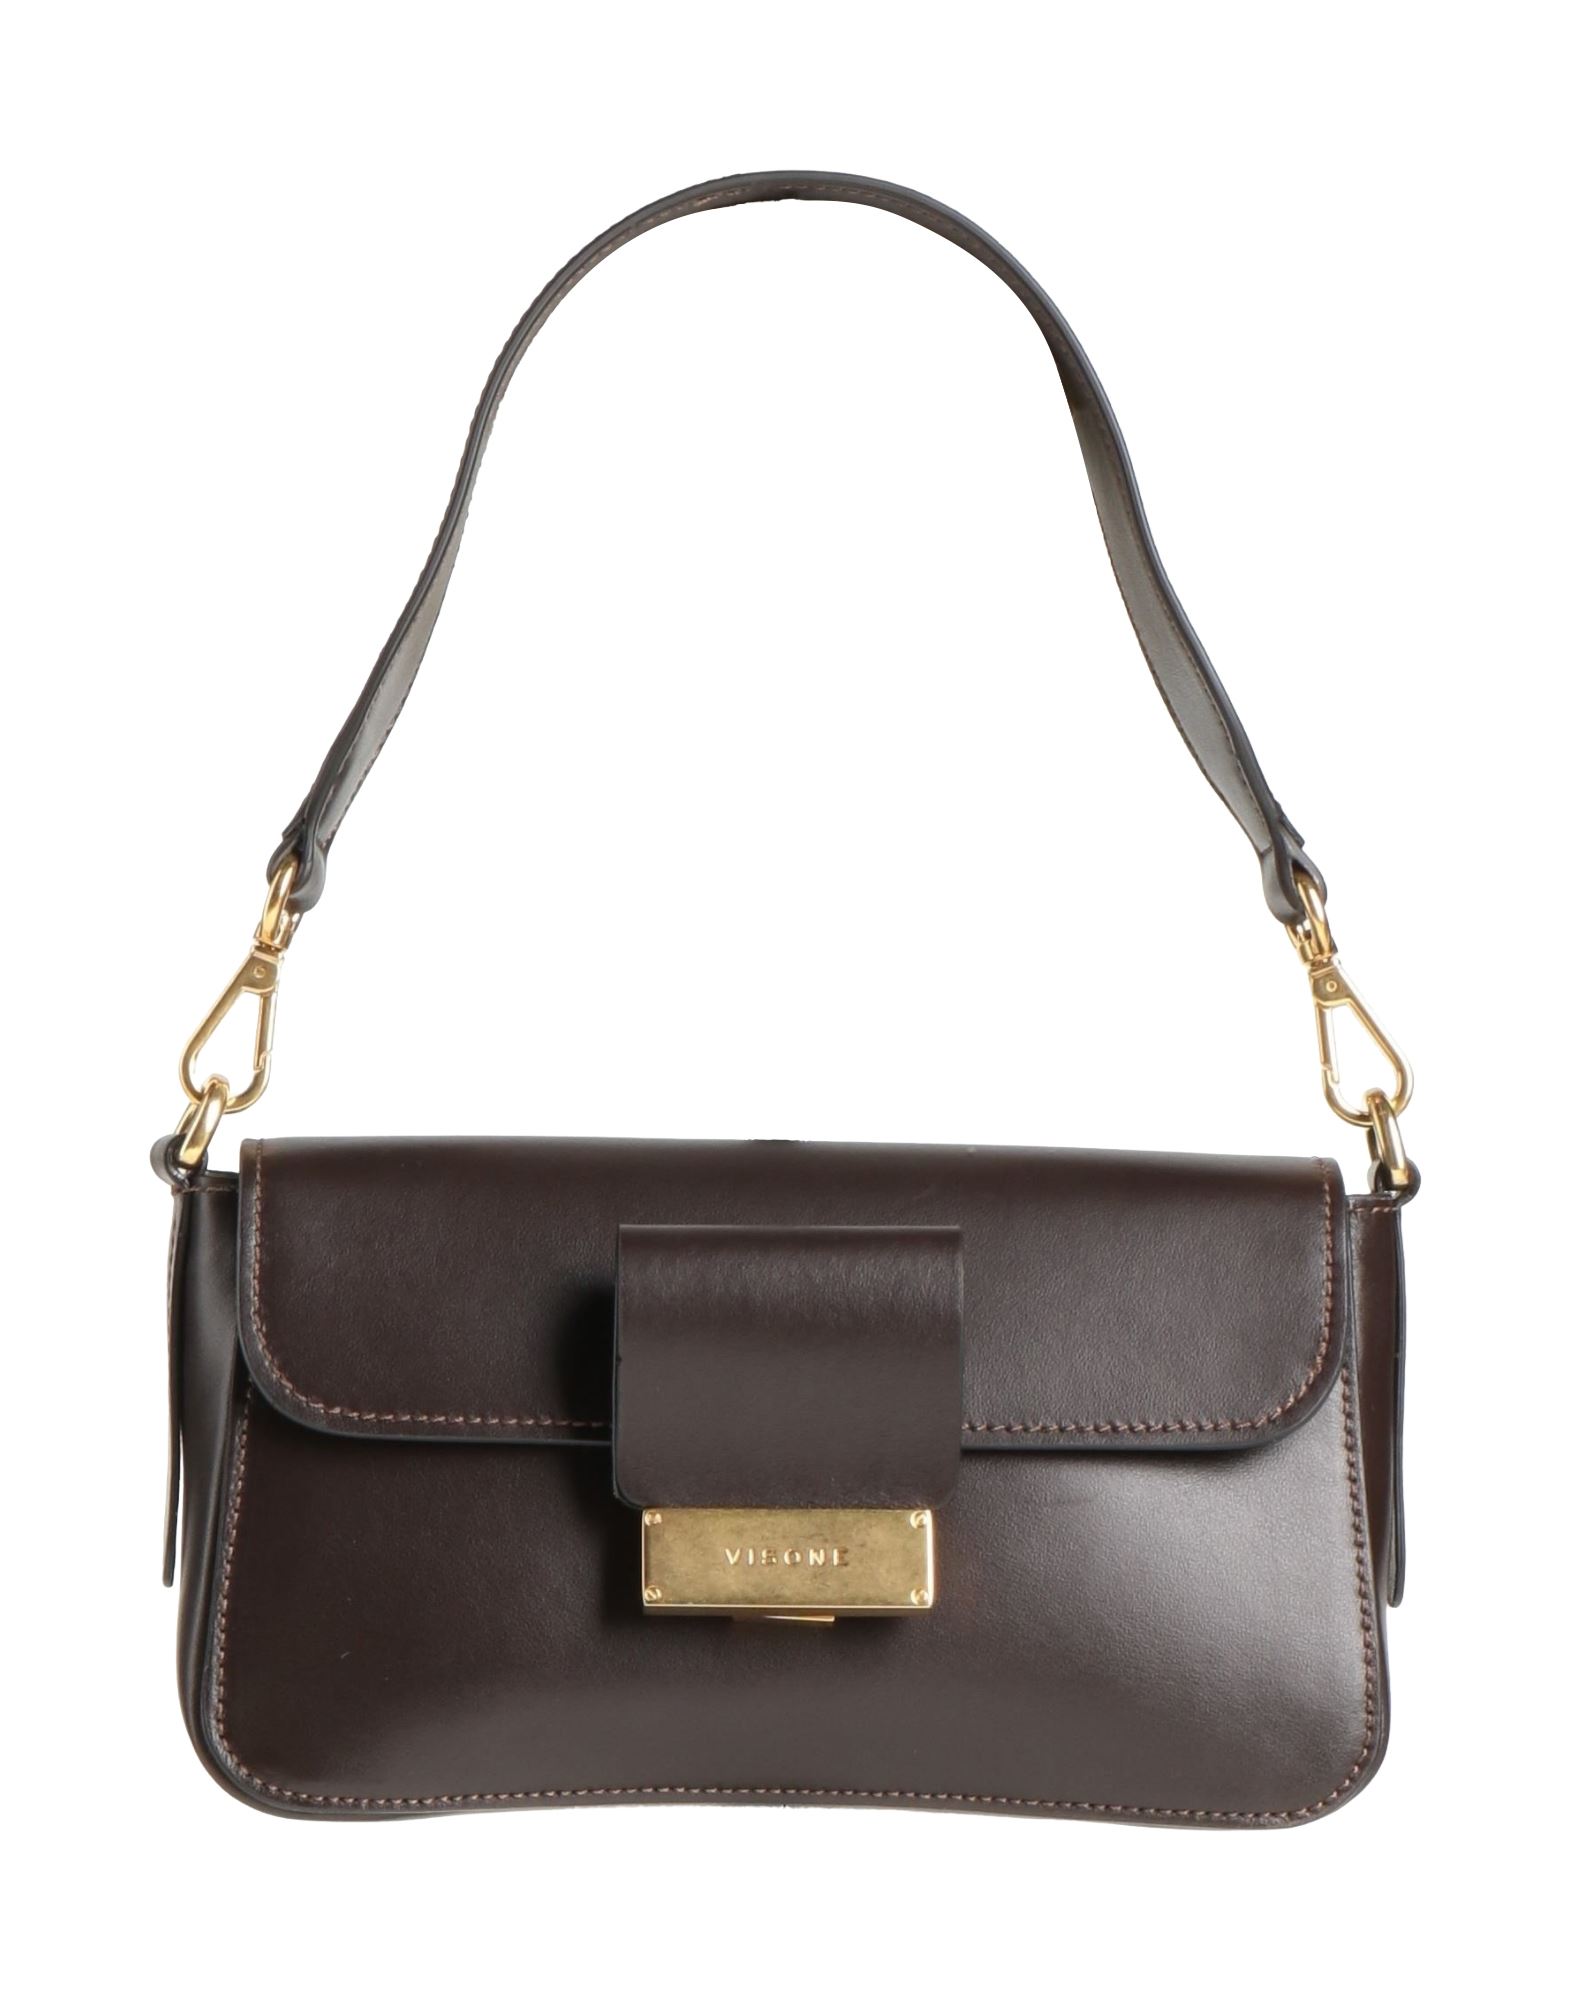 Visone Handbags In Brown